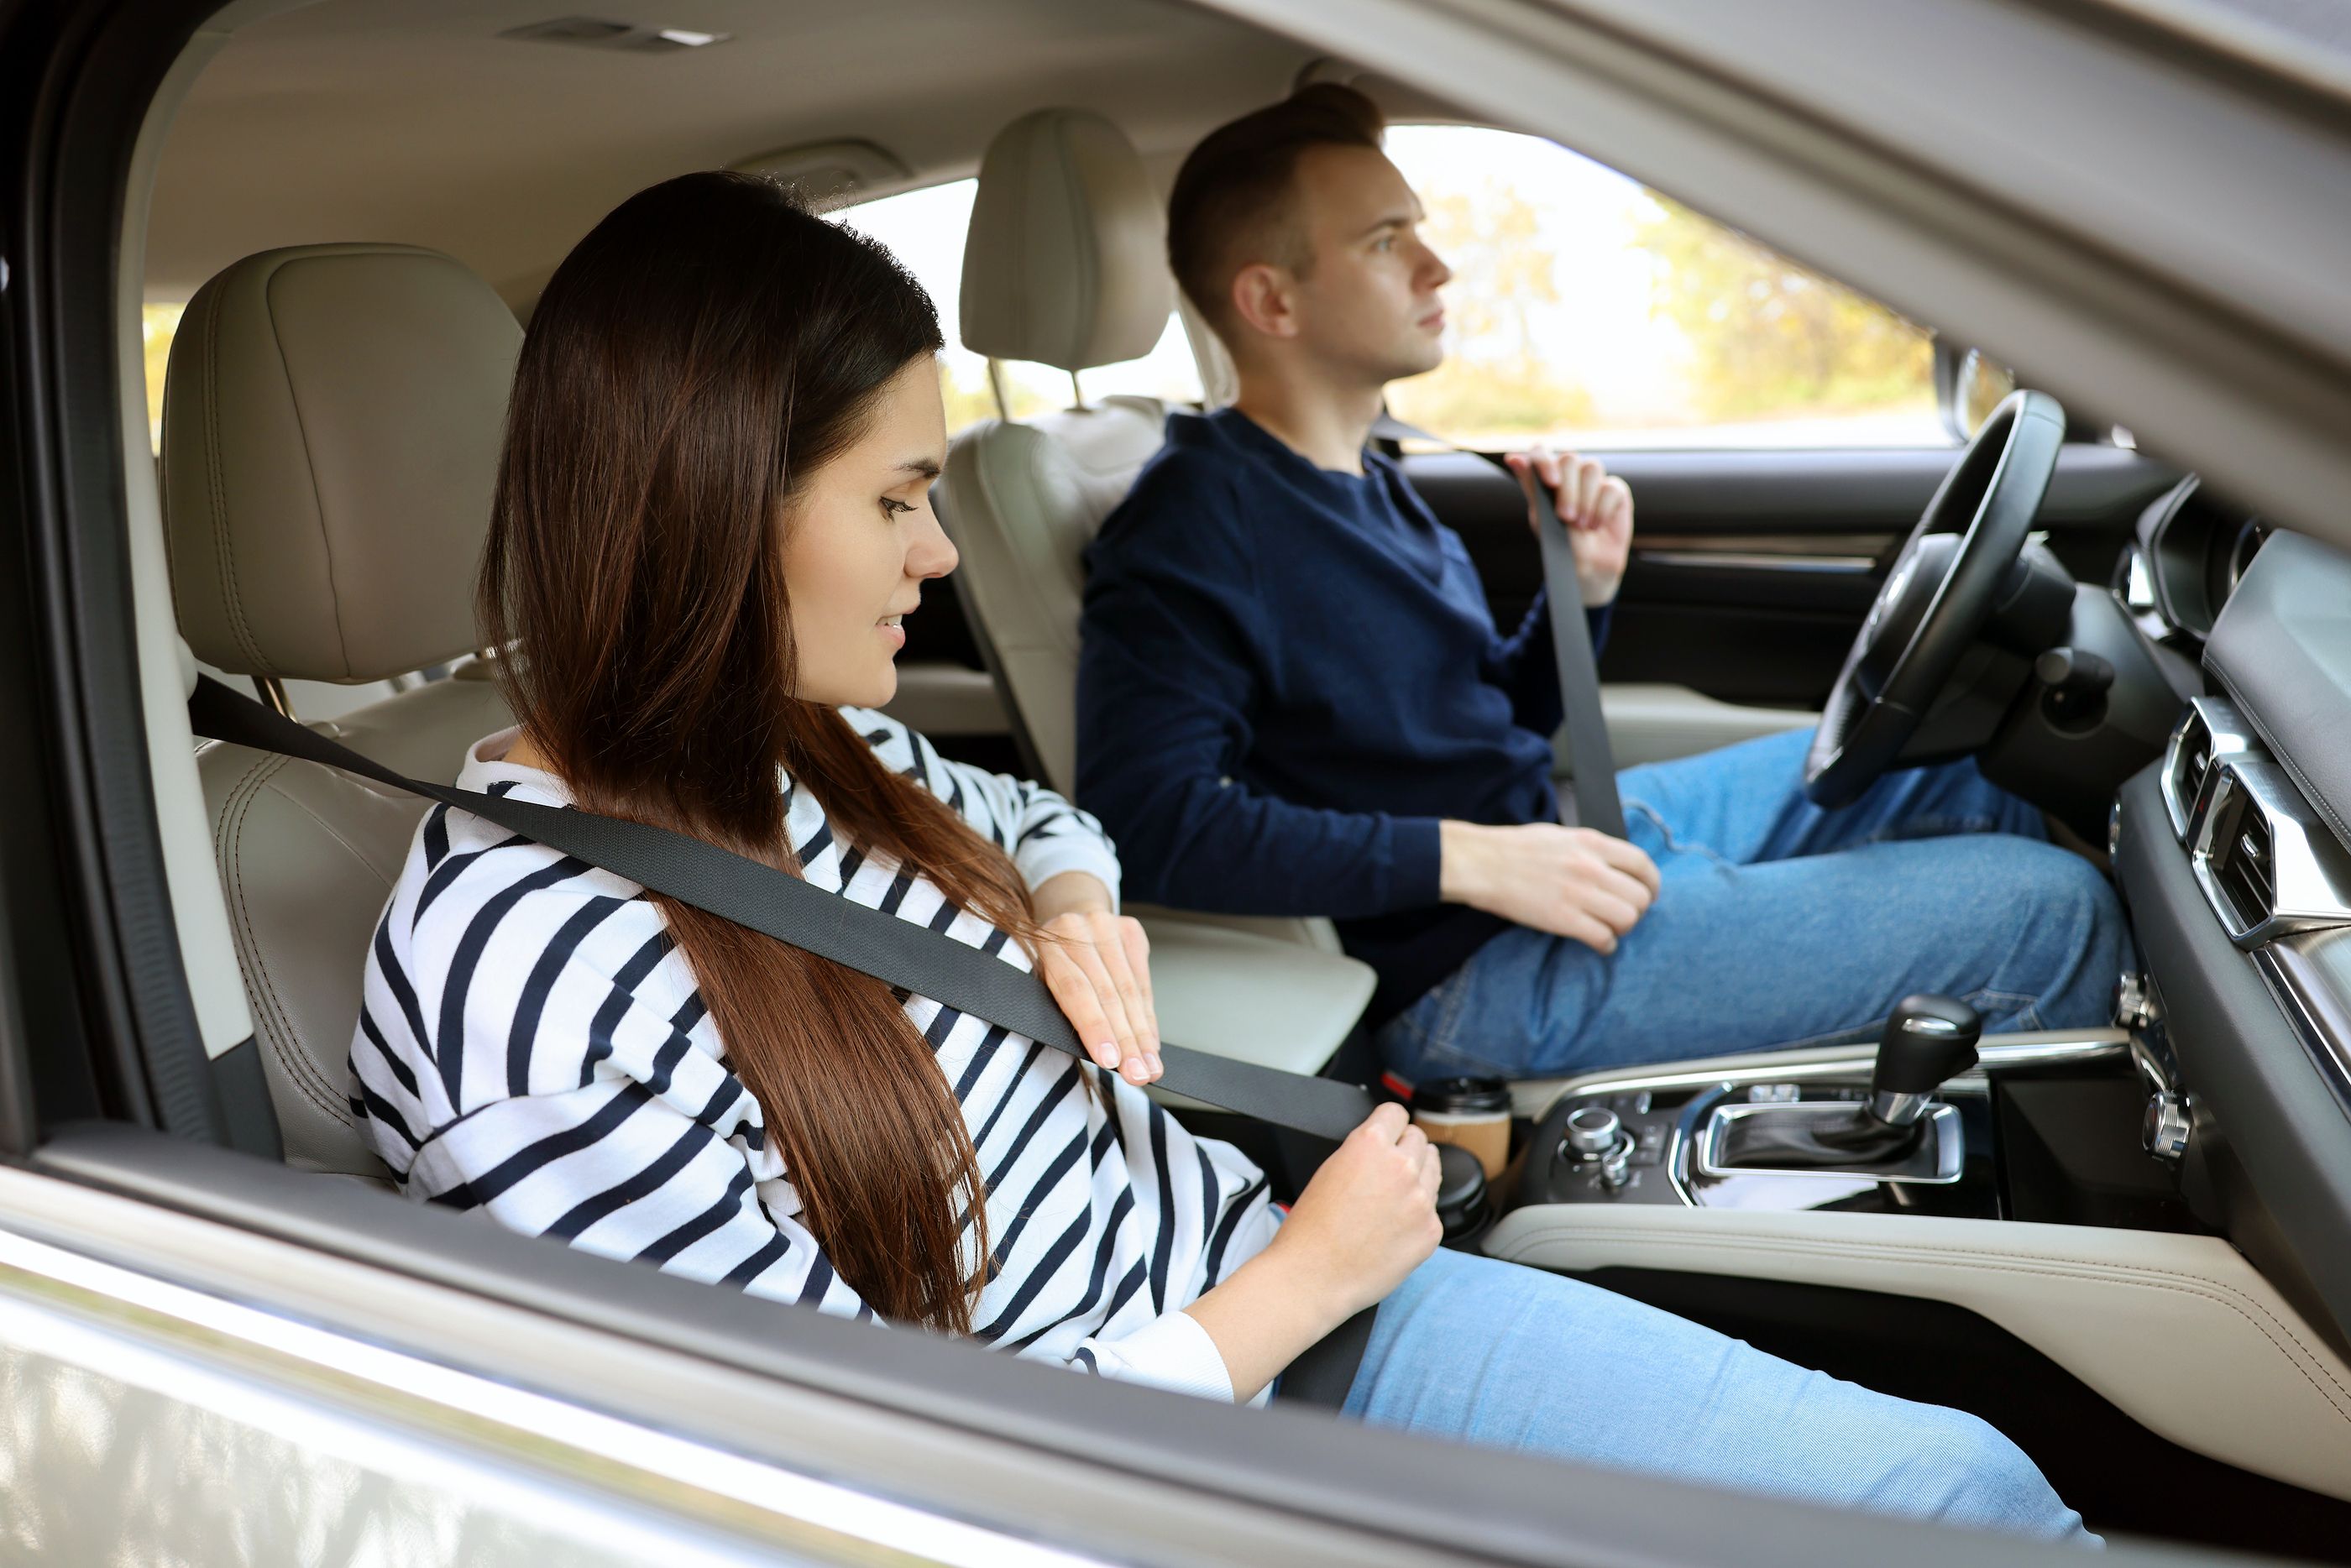 Estas son las multas más comunes que nos pueden poner como pasajeros de un coche. Foto: Bigstock